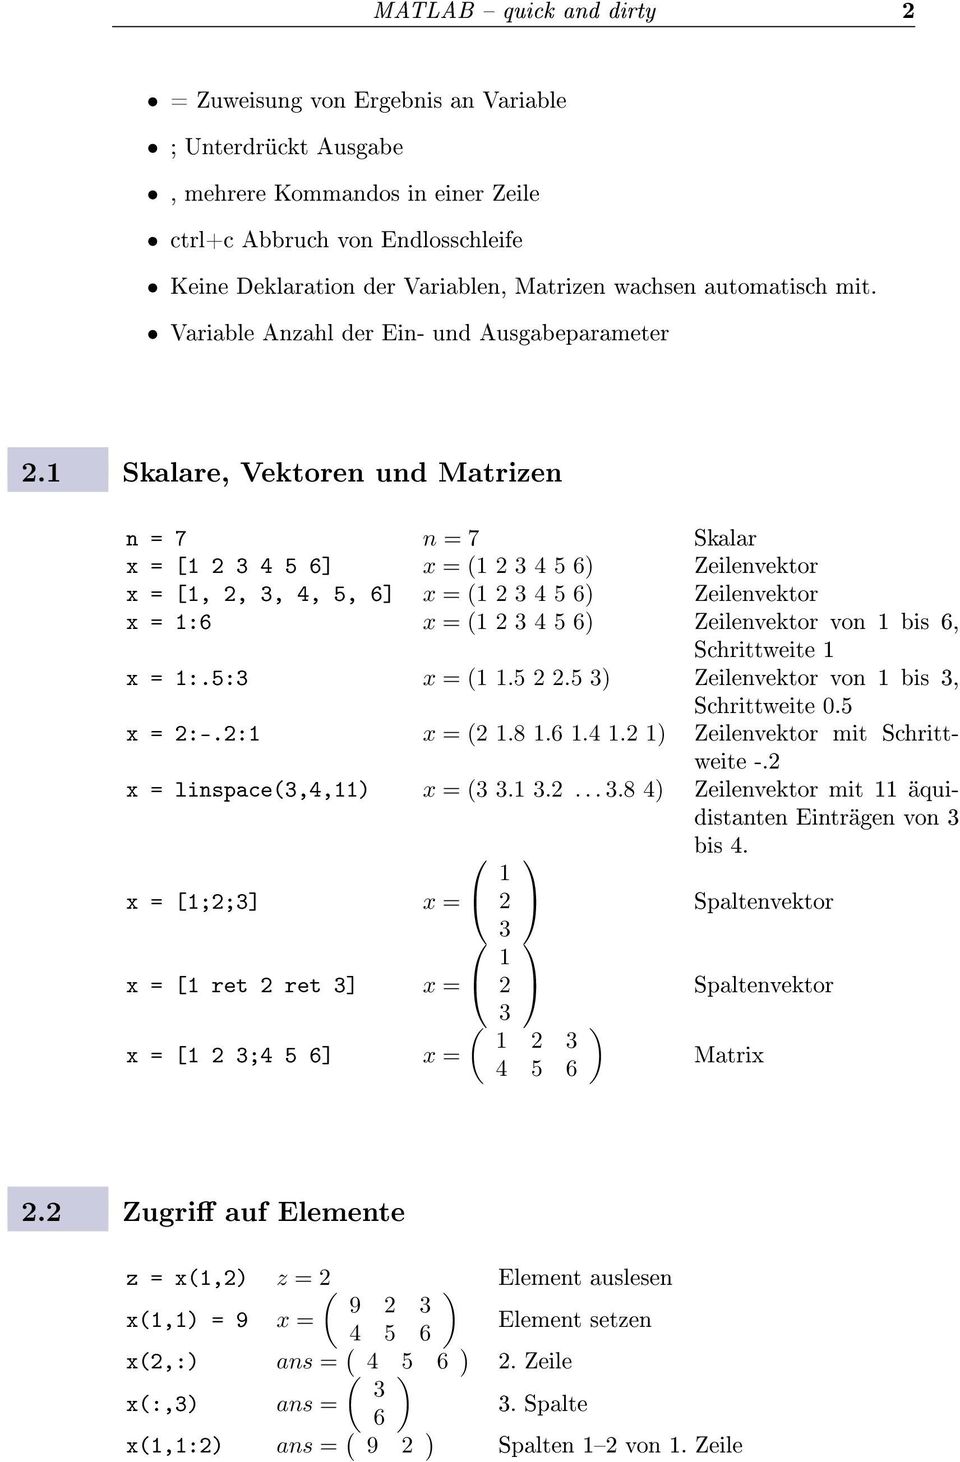 1 Skalare, Vektoren und Matrizen n = 7 n = 7 Skalar x = [1 2 3 4 5 6] x = (1 2 3 4 5 6) Zeilenvektor x = [1, 2, 3, 4, 5, 6] x = (1 2 3 4 5 6) Zeilenvektor x = 1:6 x = (1 2 3 4 5 6) Zeilenvektor von 1